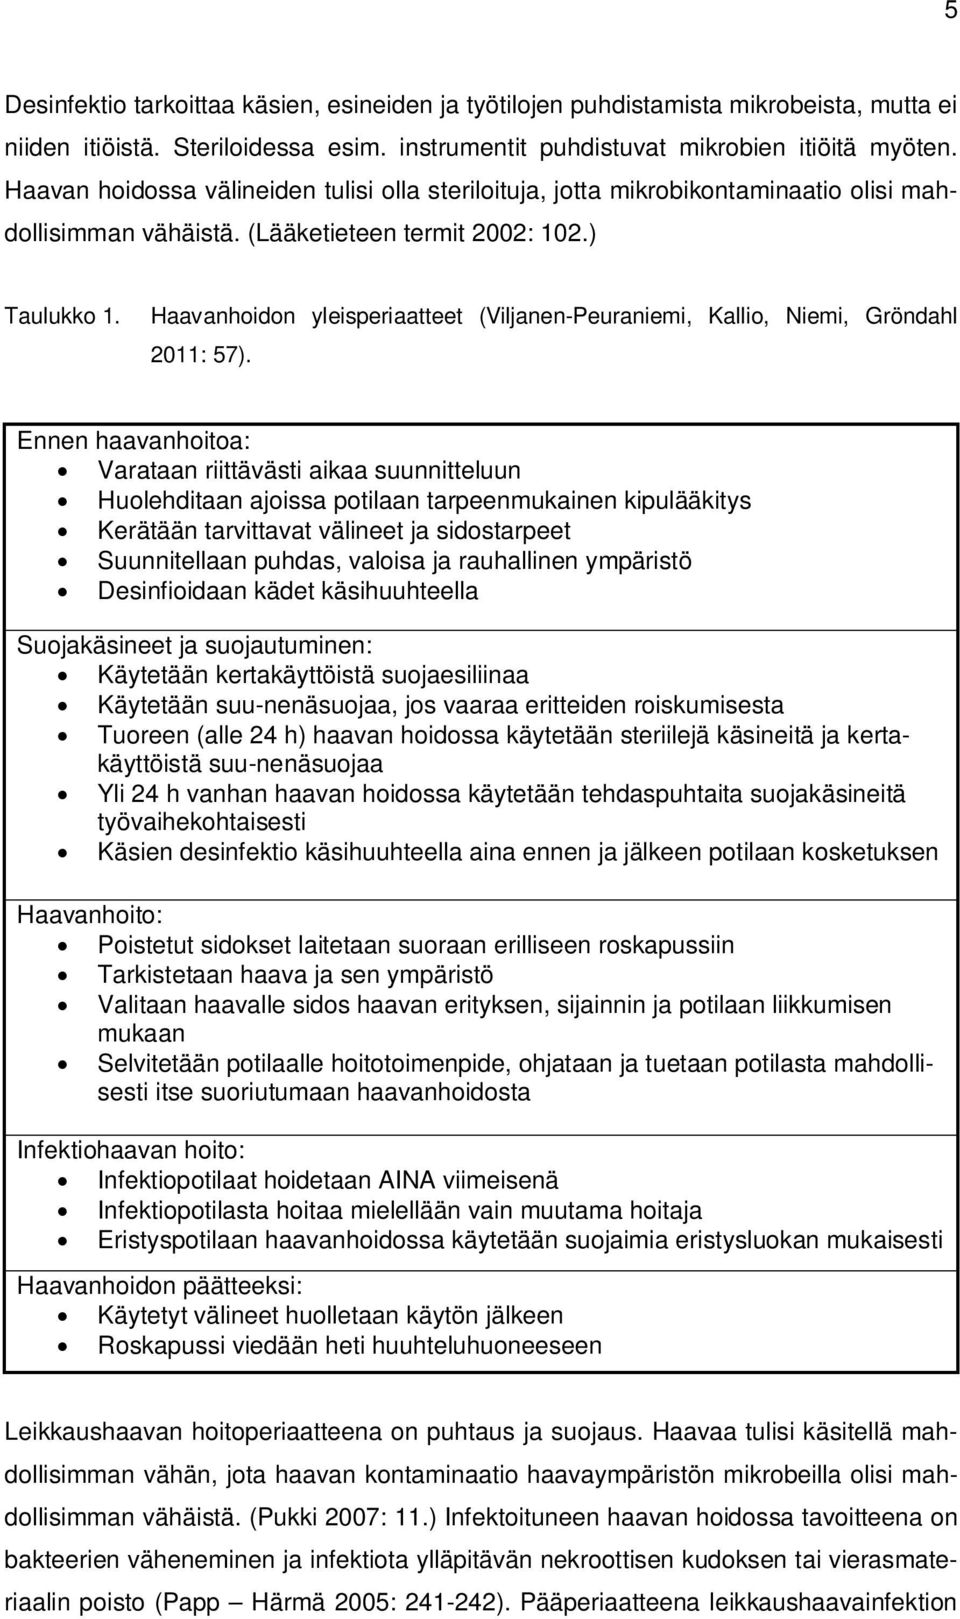 Haavanhoidon yleisperiaatteet (Viljanen-Peuraniemi, Kallio, Niemi, Gröndahl 2011: 57).